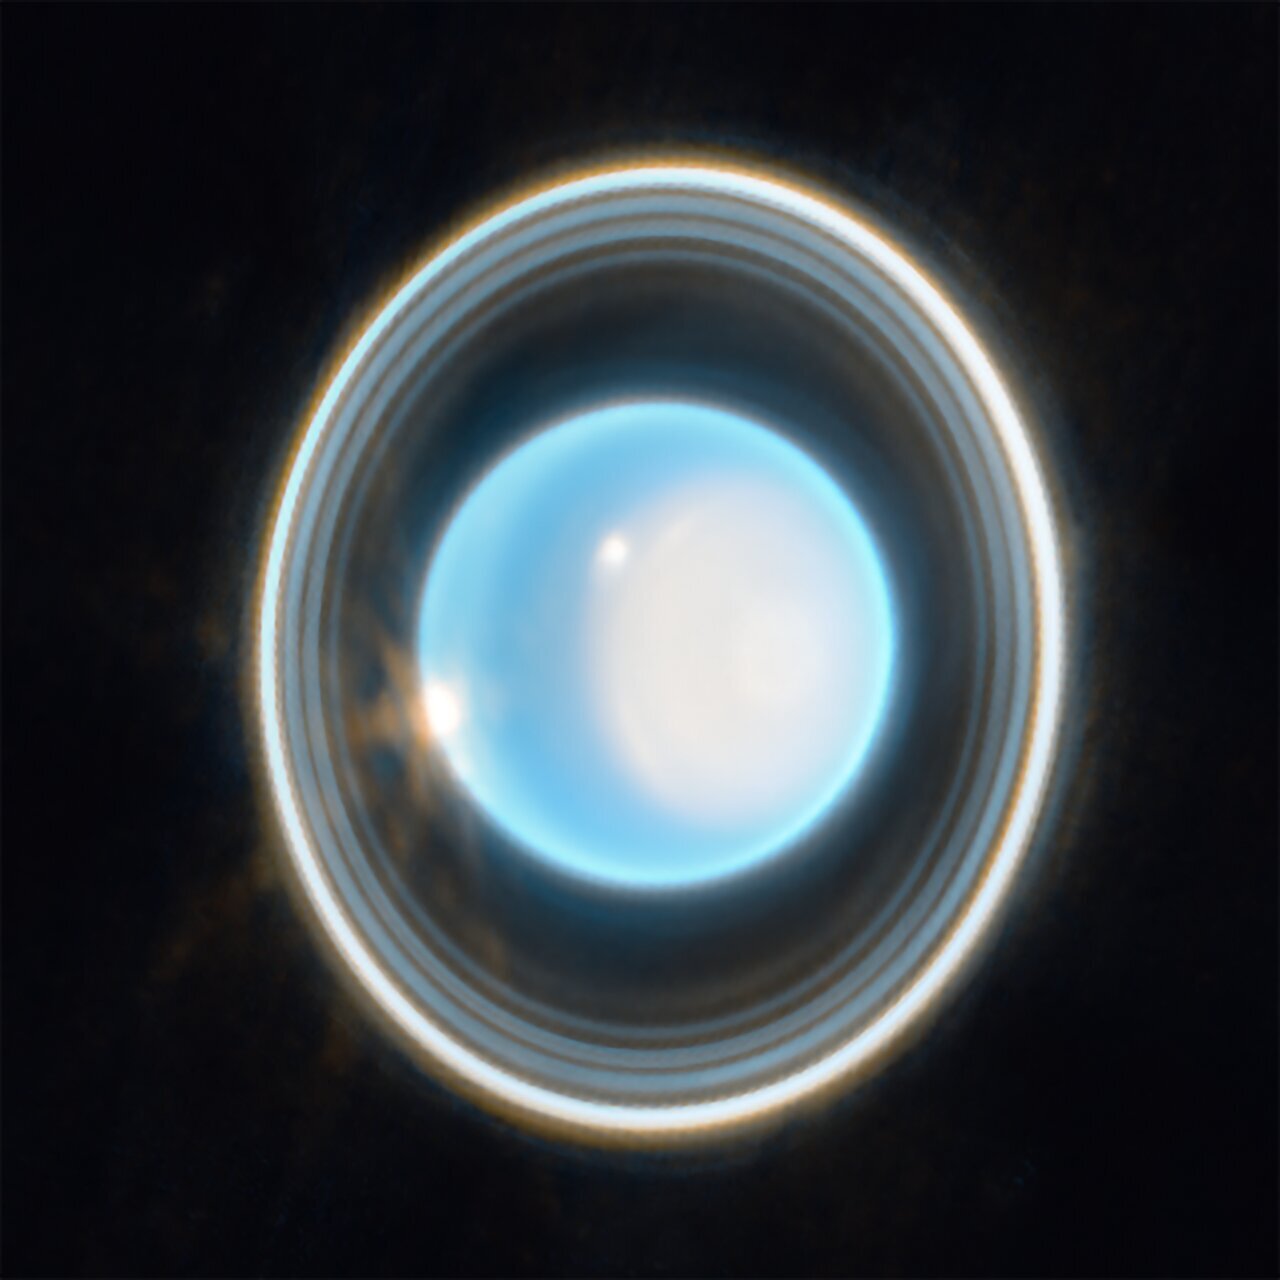 Webb fügt eine weitere Ringwelt mit einem neuen Bild von Uranus hinzu